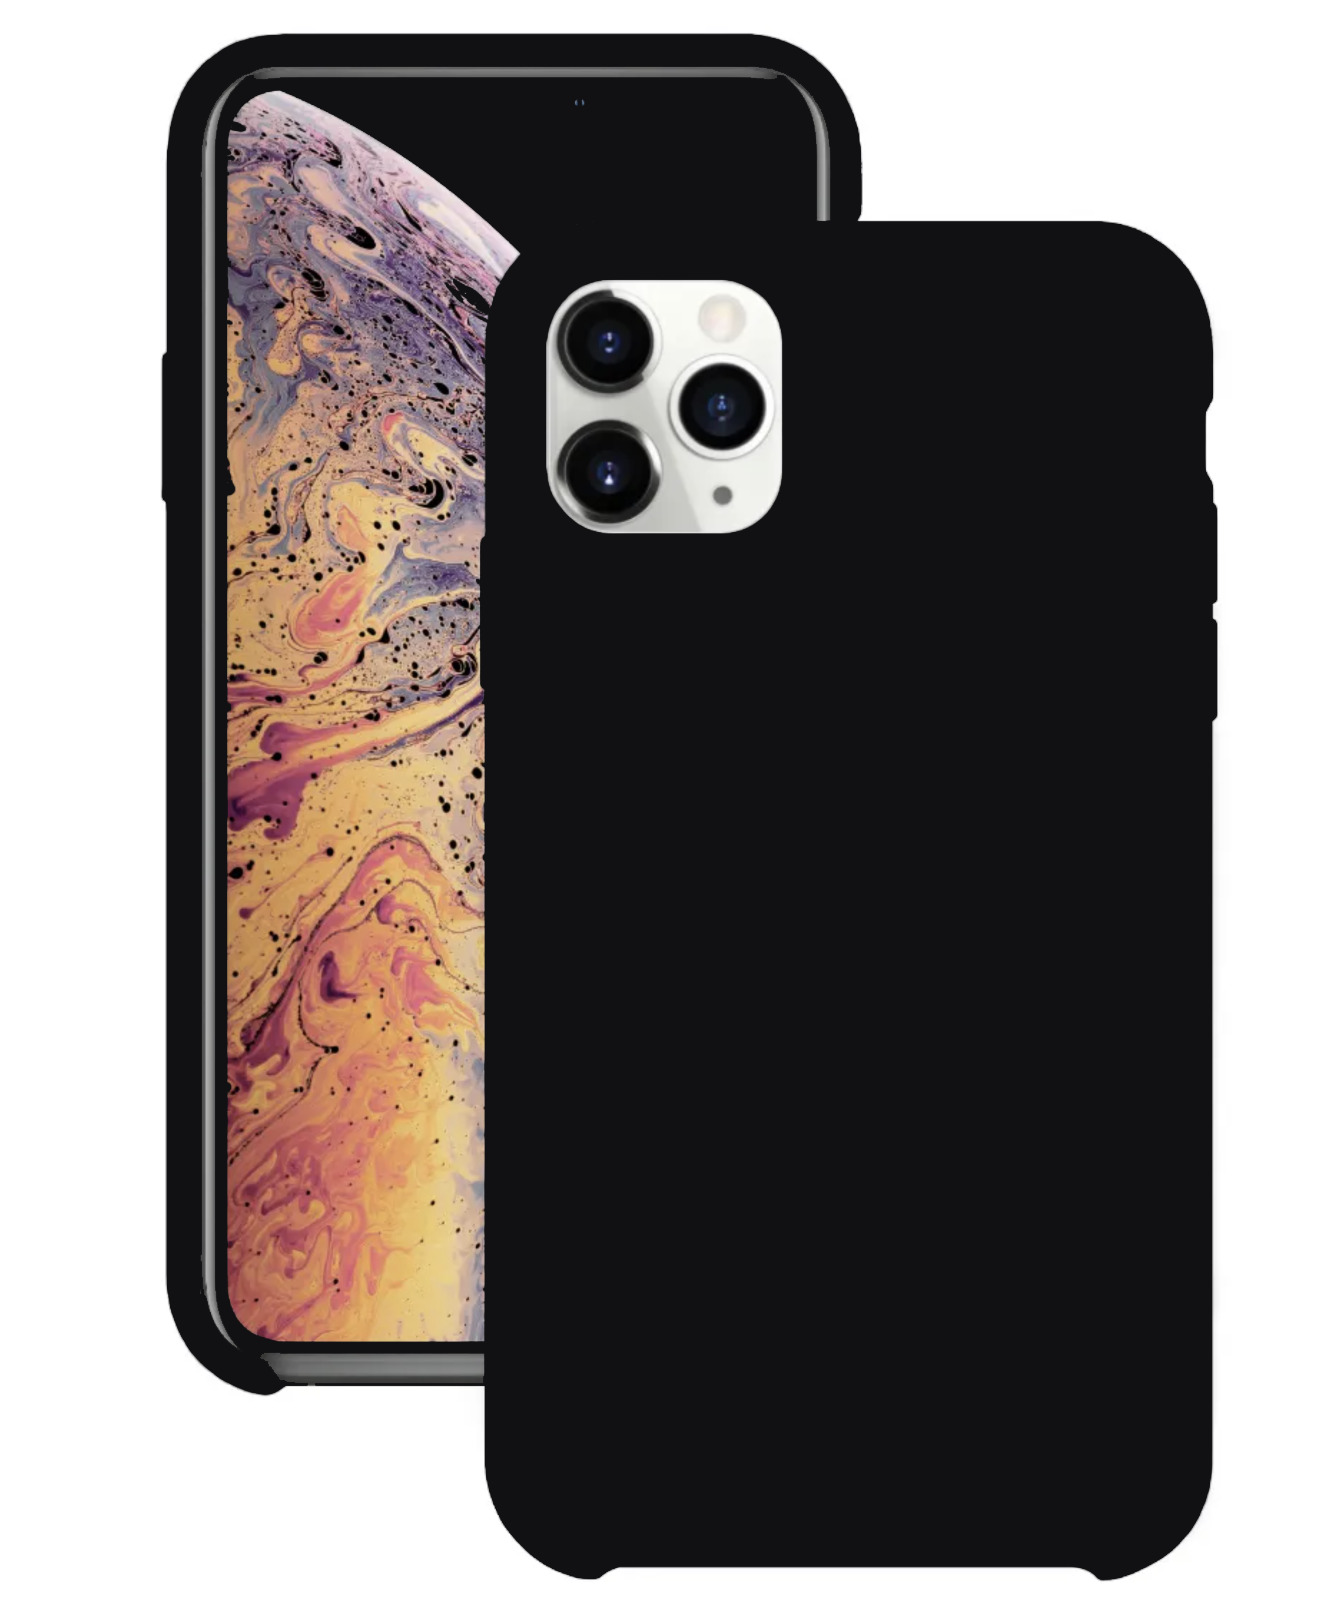 Чехол для Apple iPhone 11 Pro Max Silicone Case (Черный)